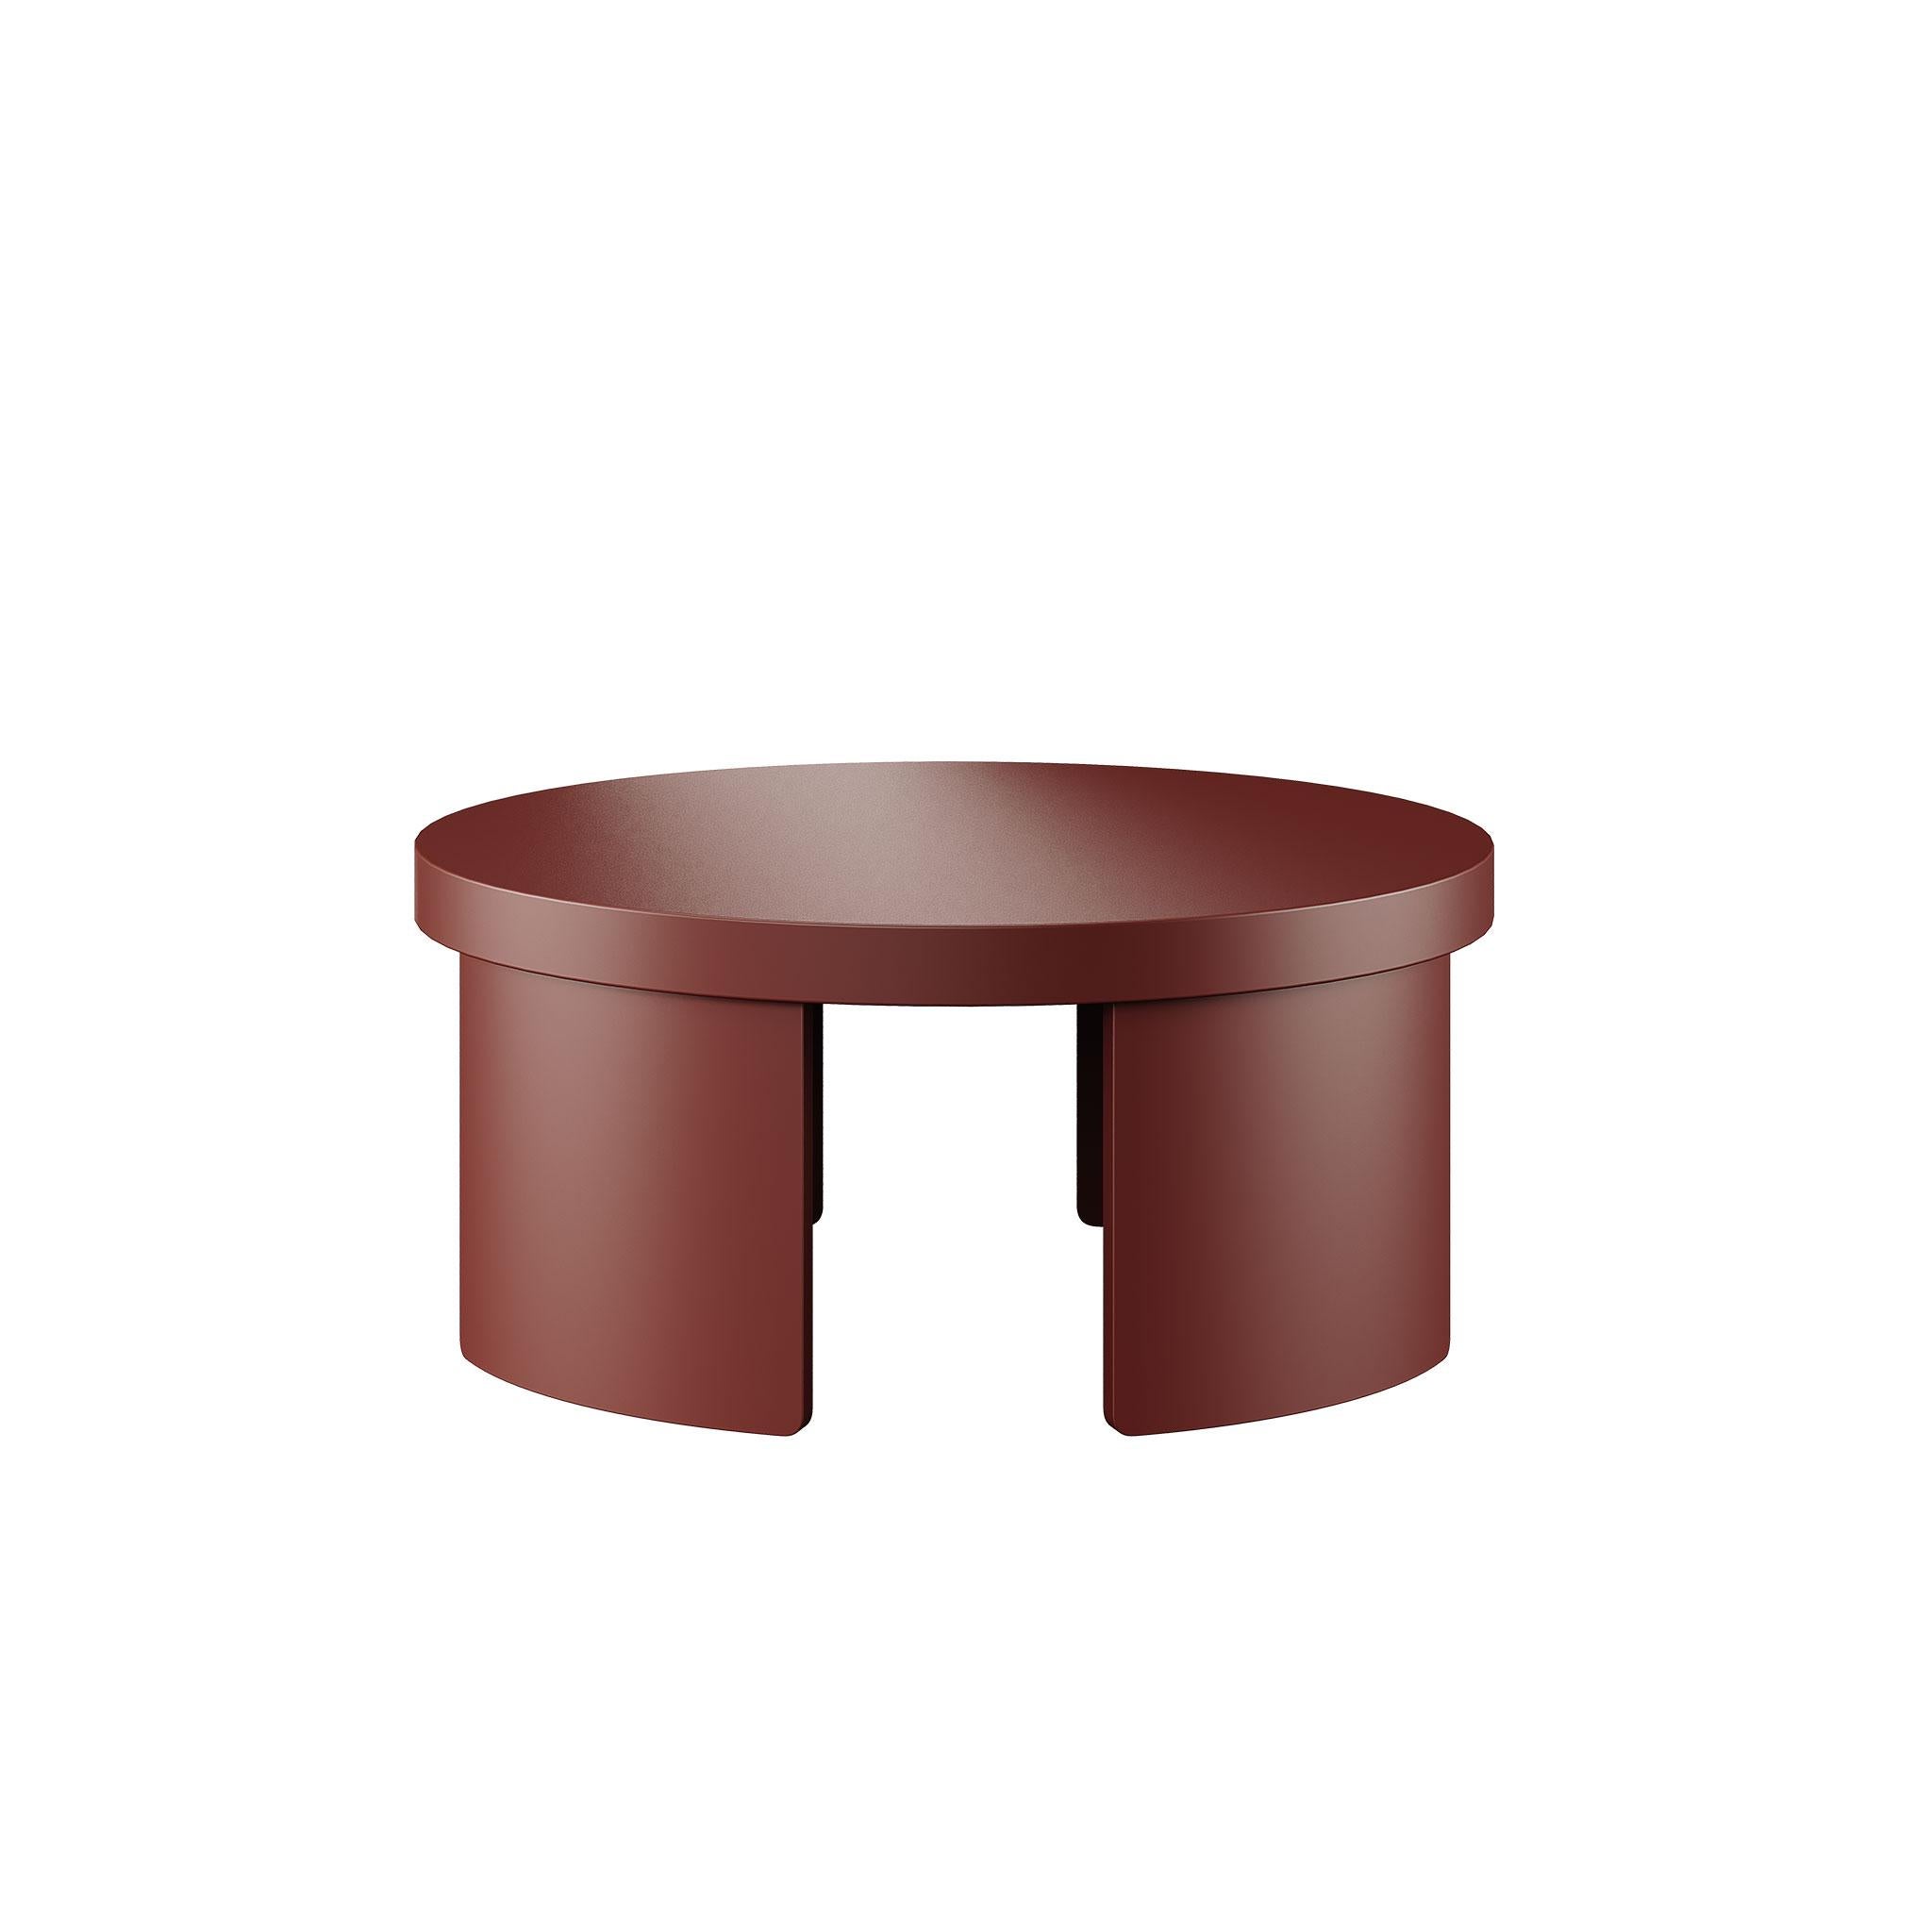 Voici notre table centrale ronde moderne dans une finition captivante en bois laqué rouge-brun.
Cette pièce contemporaine fusionne harmonieusement la forme et la fonction, ajoutant une touche de sophistication à votre espace de vie.
Fabriquée avec